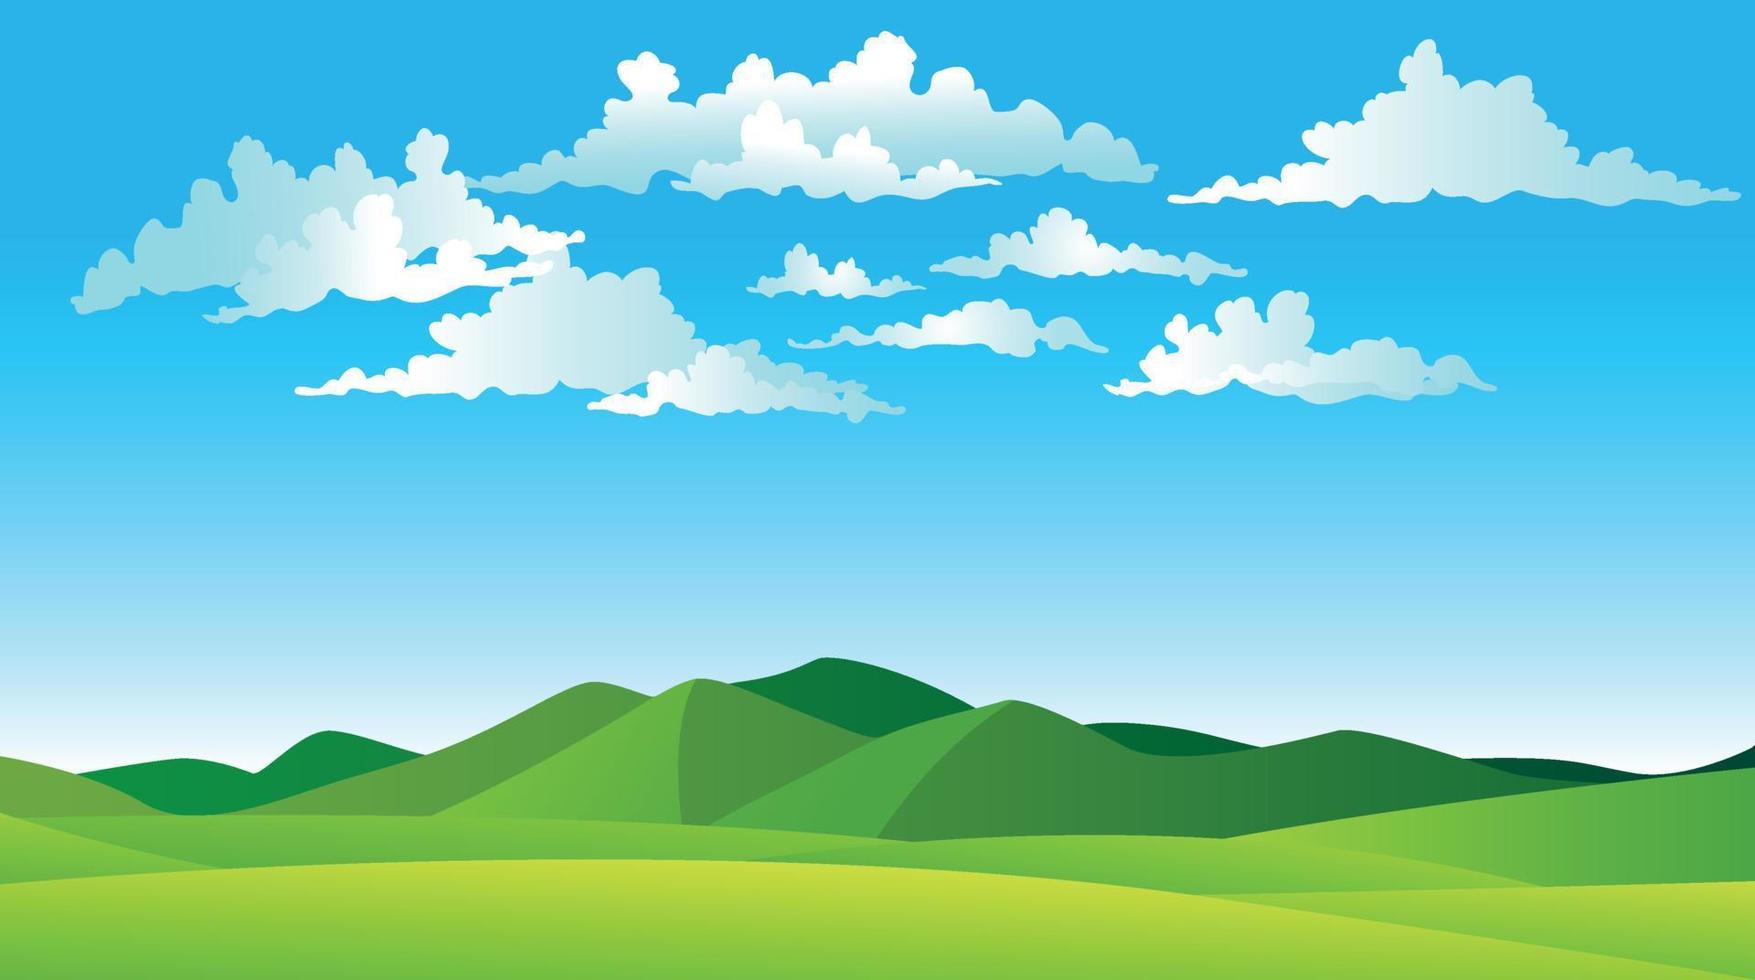 vektorillustration av vackra sommarlandskapsfält, gröna kullar, blå himmel, ljus färg, landsbakgrund i platt banderoll tecknad stil vektor